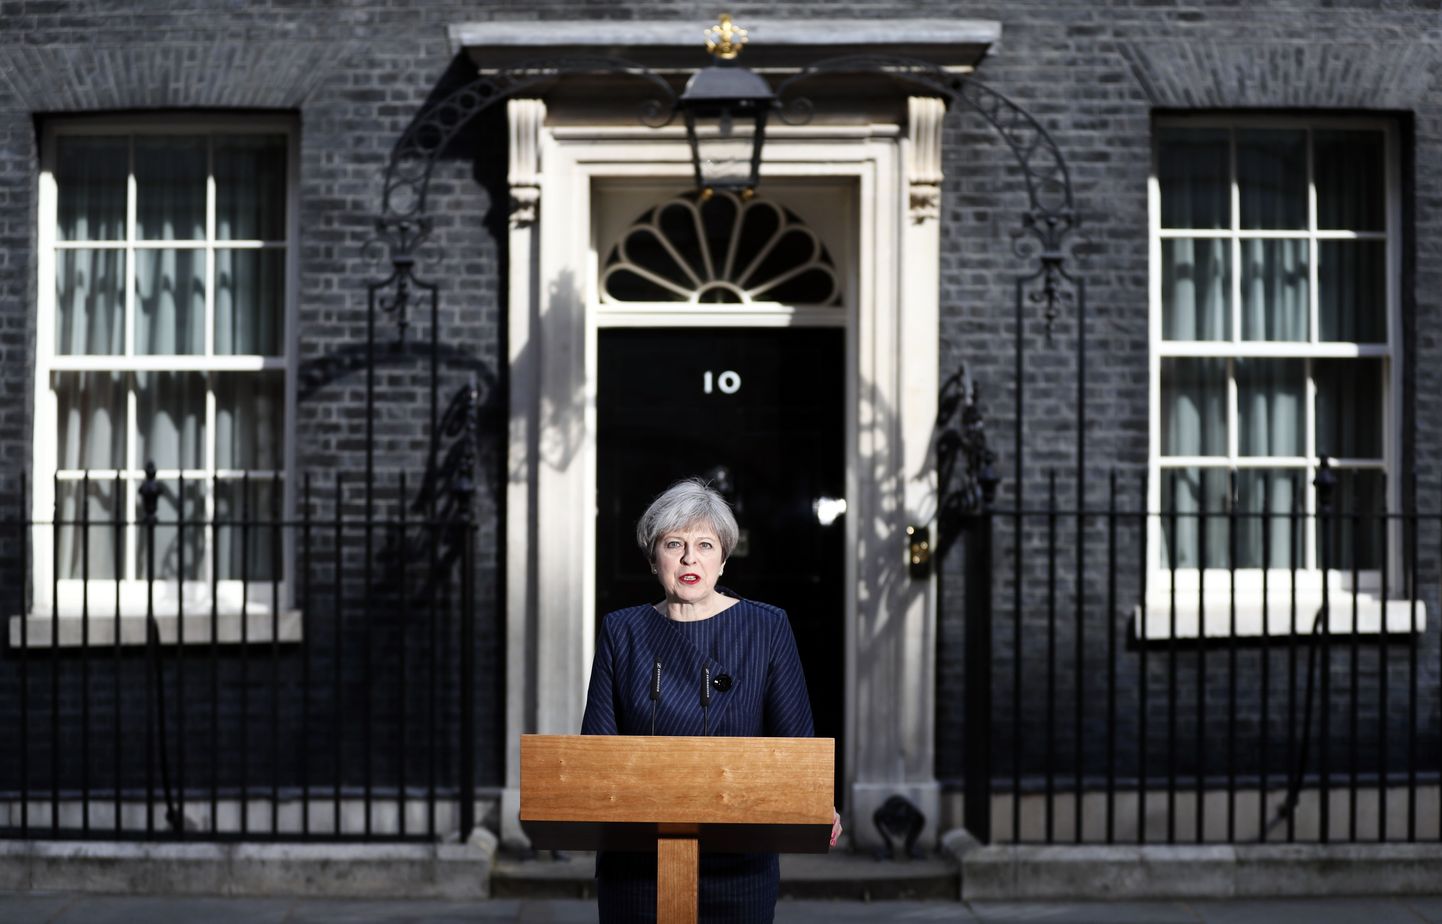 Briti peaminister Theresa May tegi eile pärast valitsuse istungit Londoni Downing Streetil üllatusliku avalduse, milles kuulutas välja ennetähtaegsed parlamendivalimised.